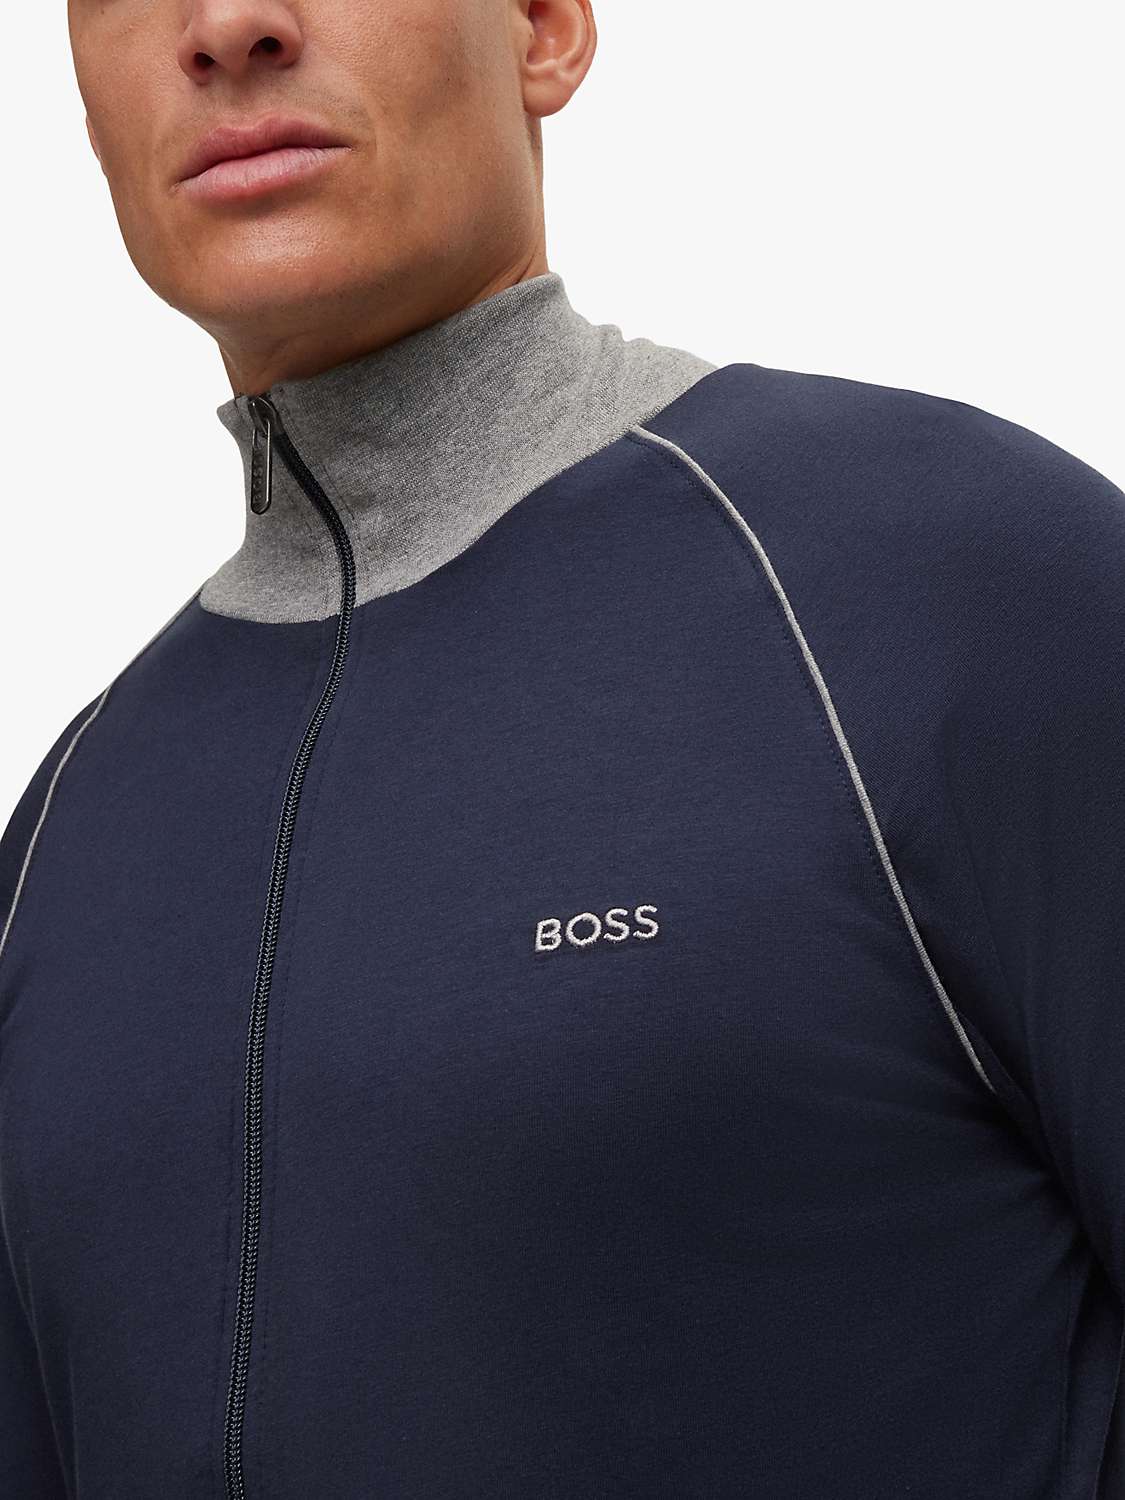 Buy BOSS Mix & Match Zip Front Sweatshirt Online at johnlewis.com